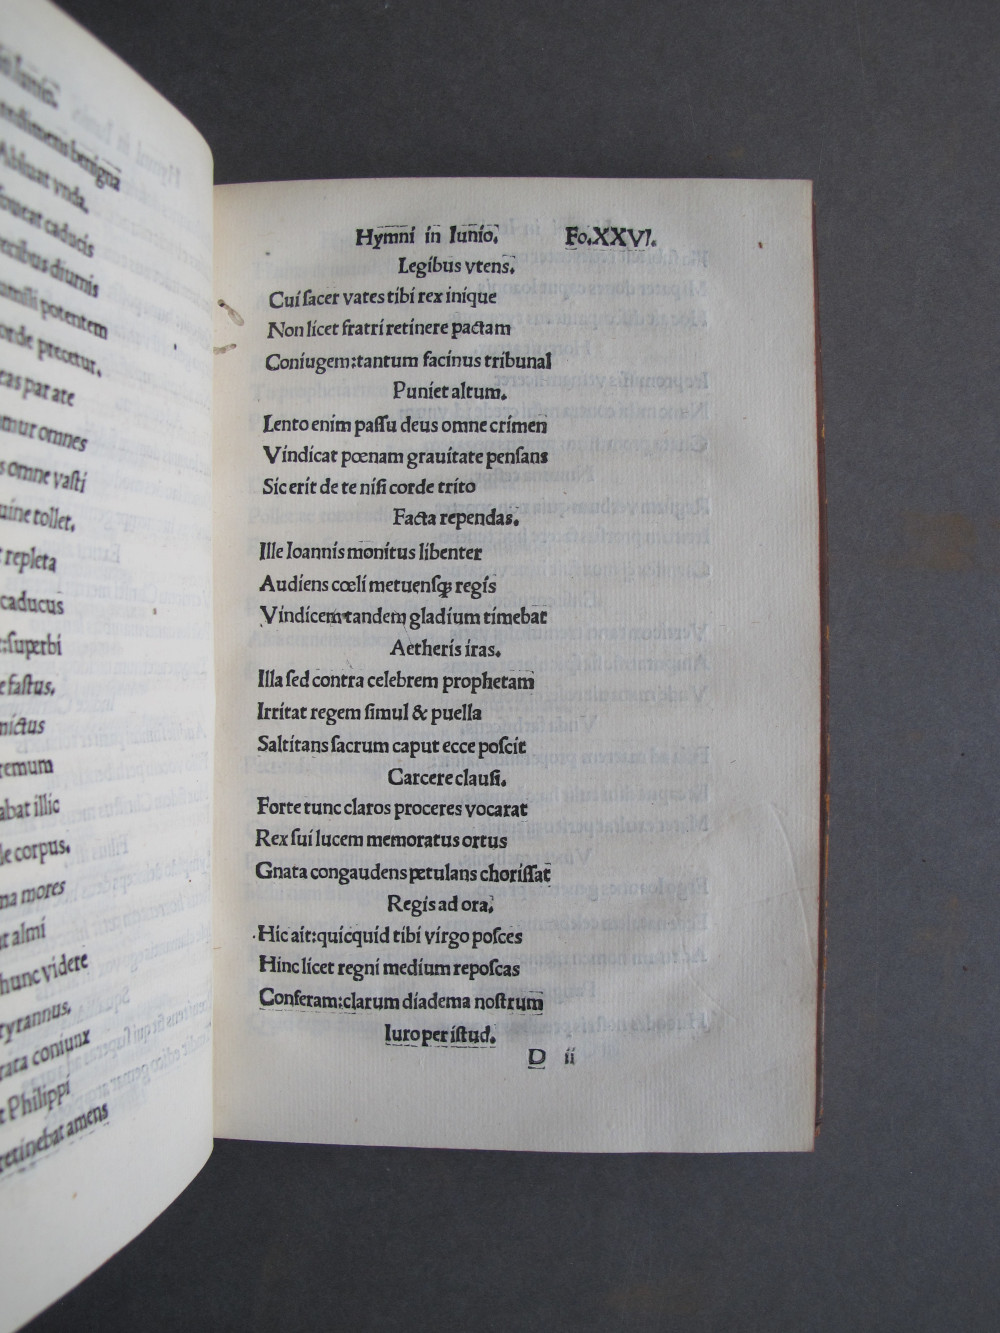 Folio 26 recto